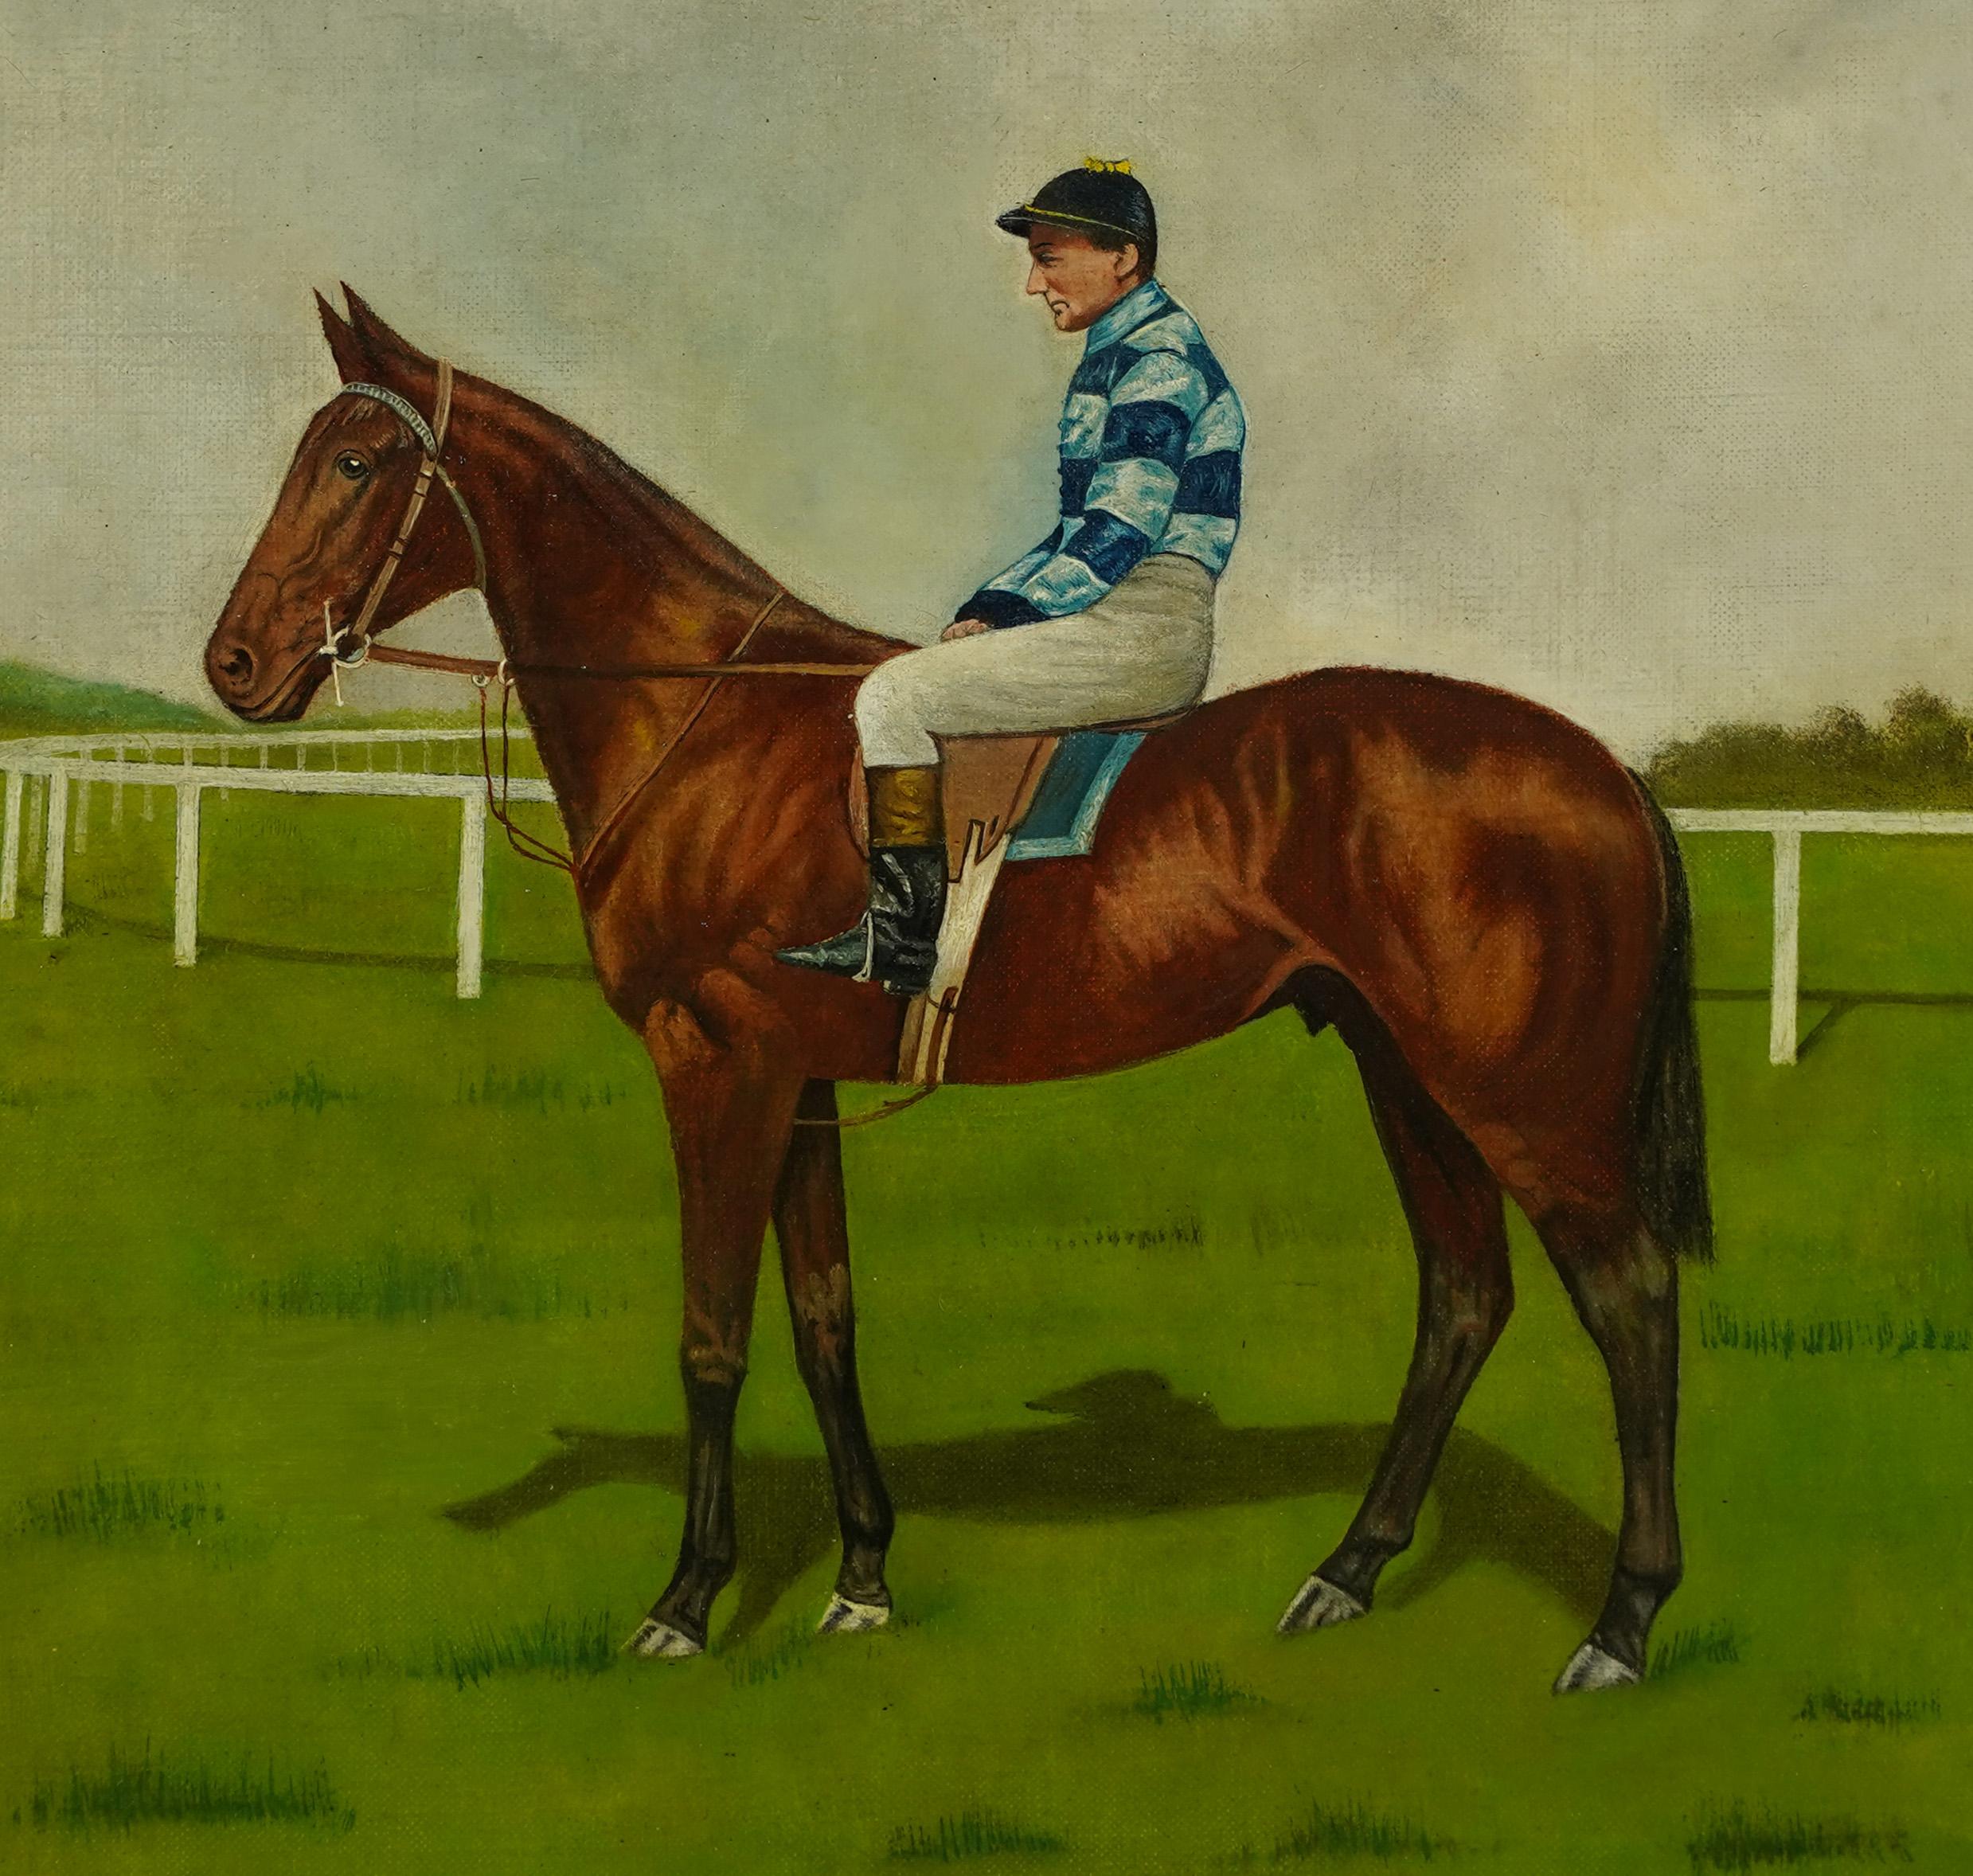 Antique American School Horse Race Portrait Equine Landscape Oil Painting 1